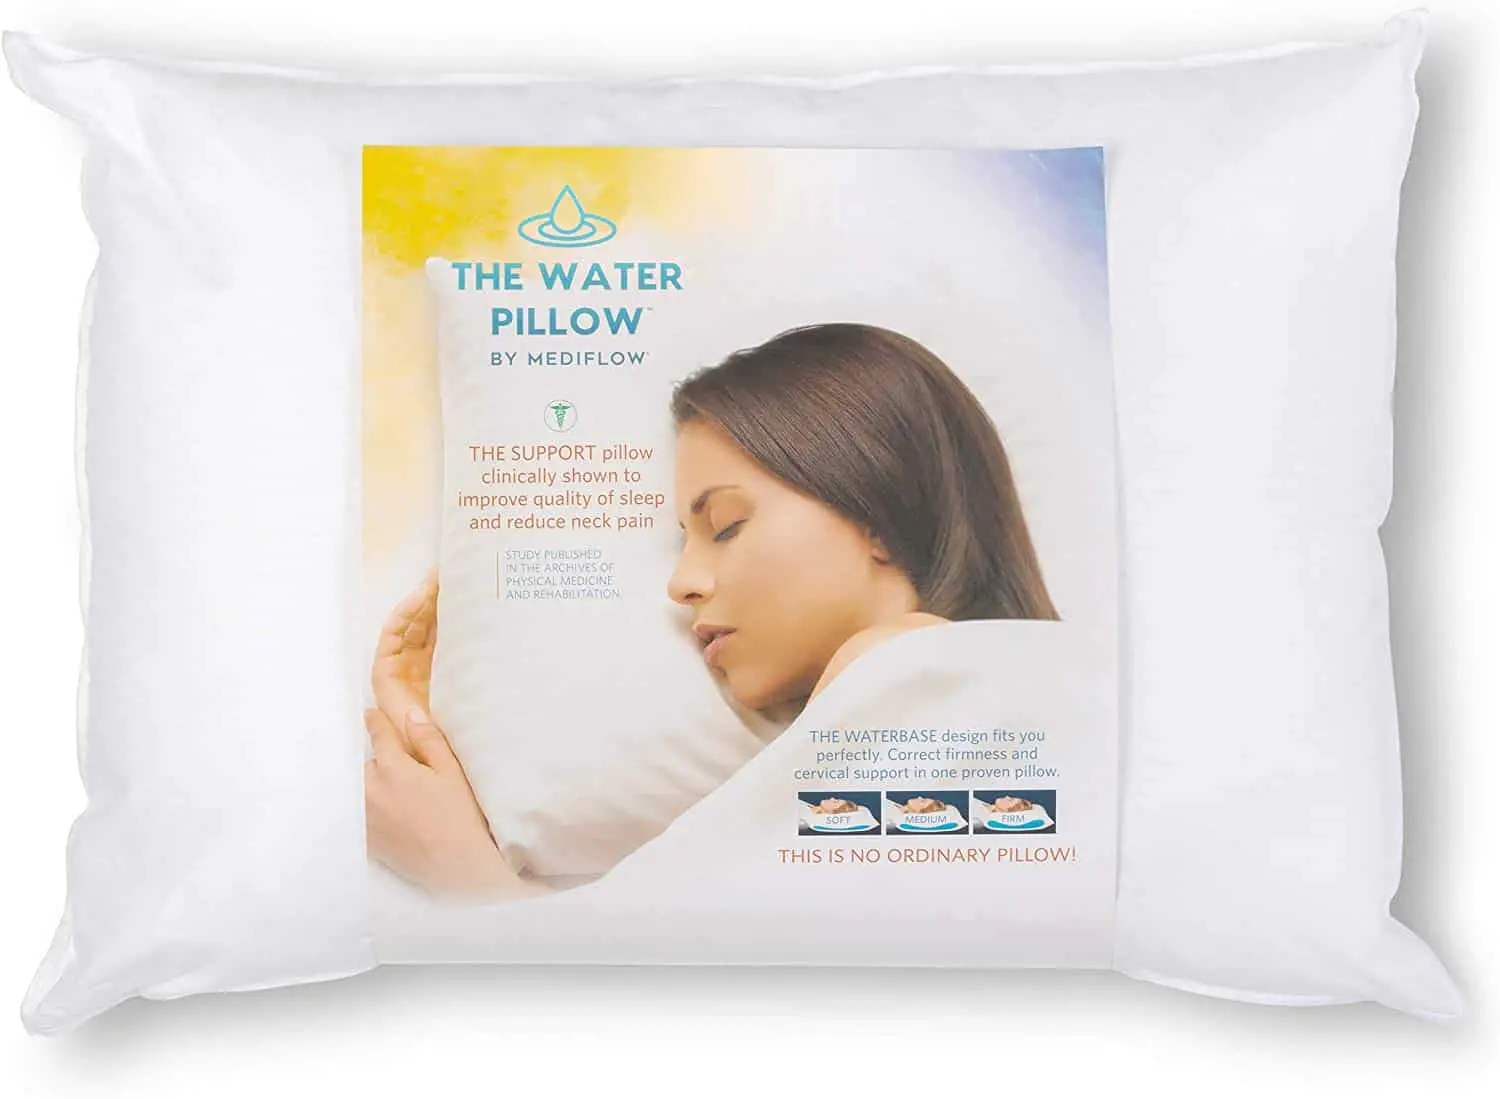 Mediflow Fiber: The First & Original Water Pillow